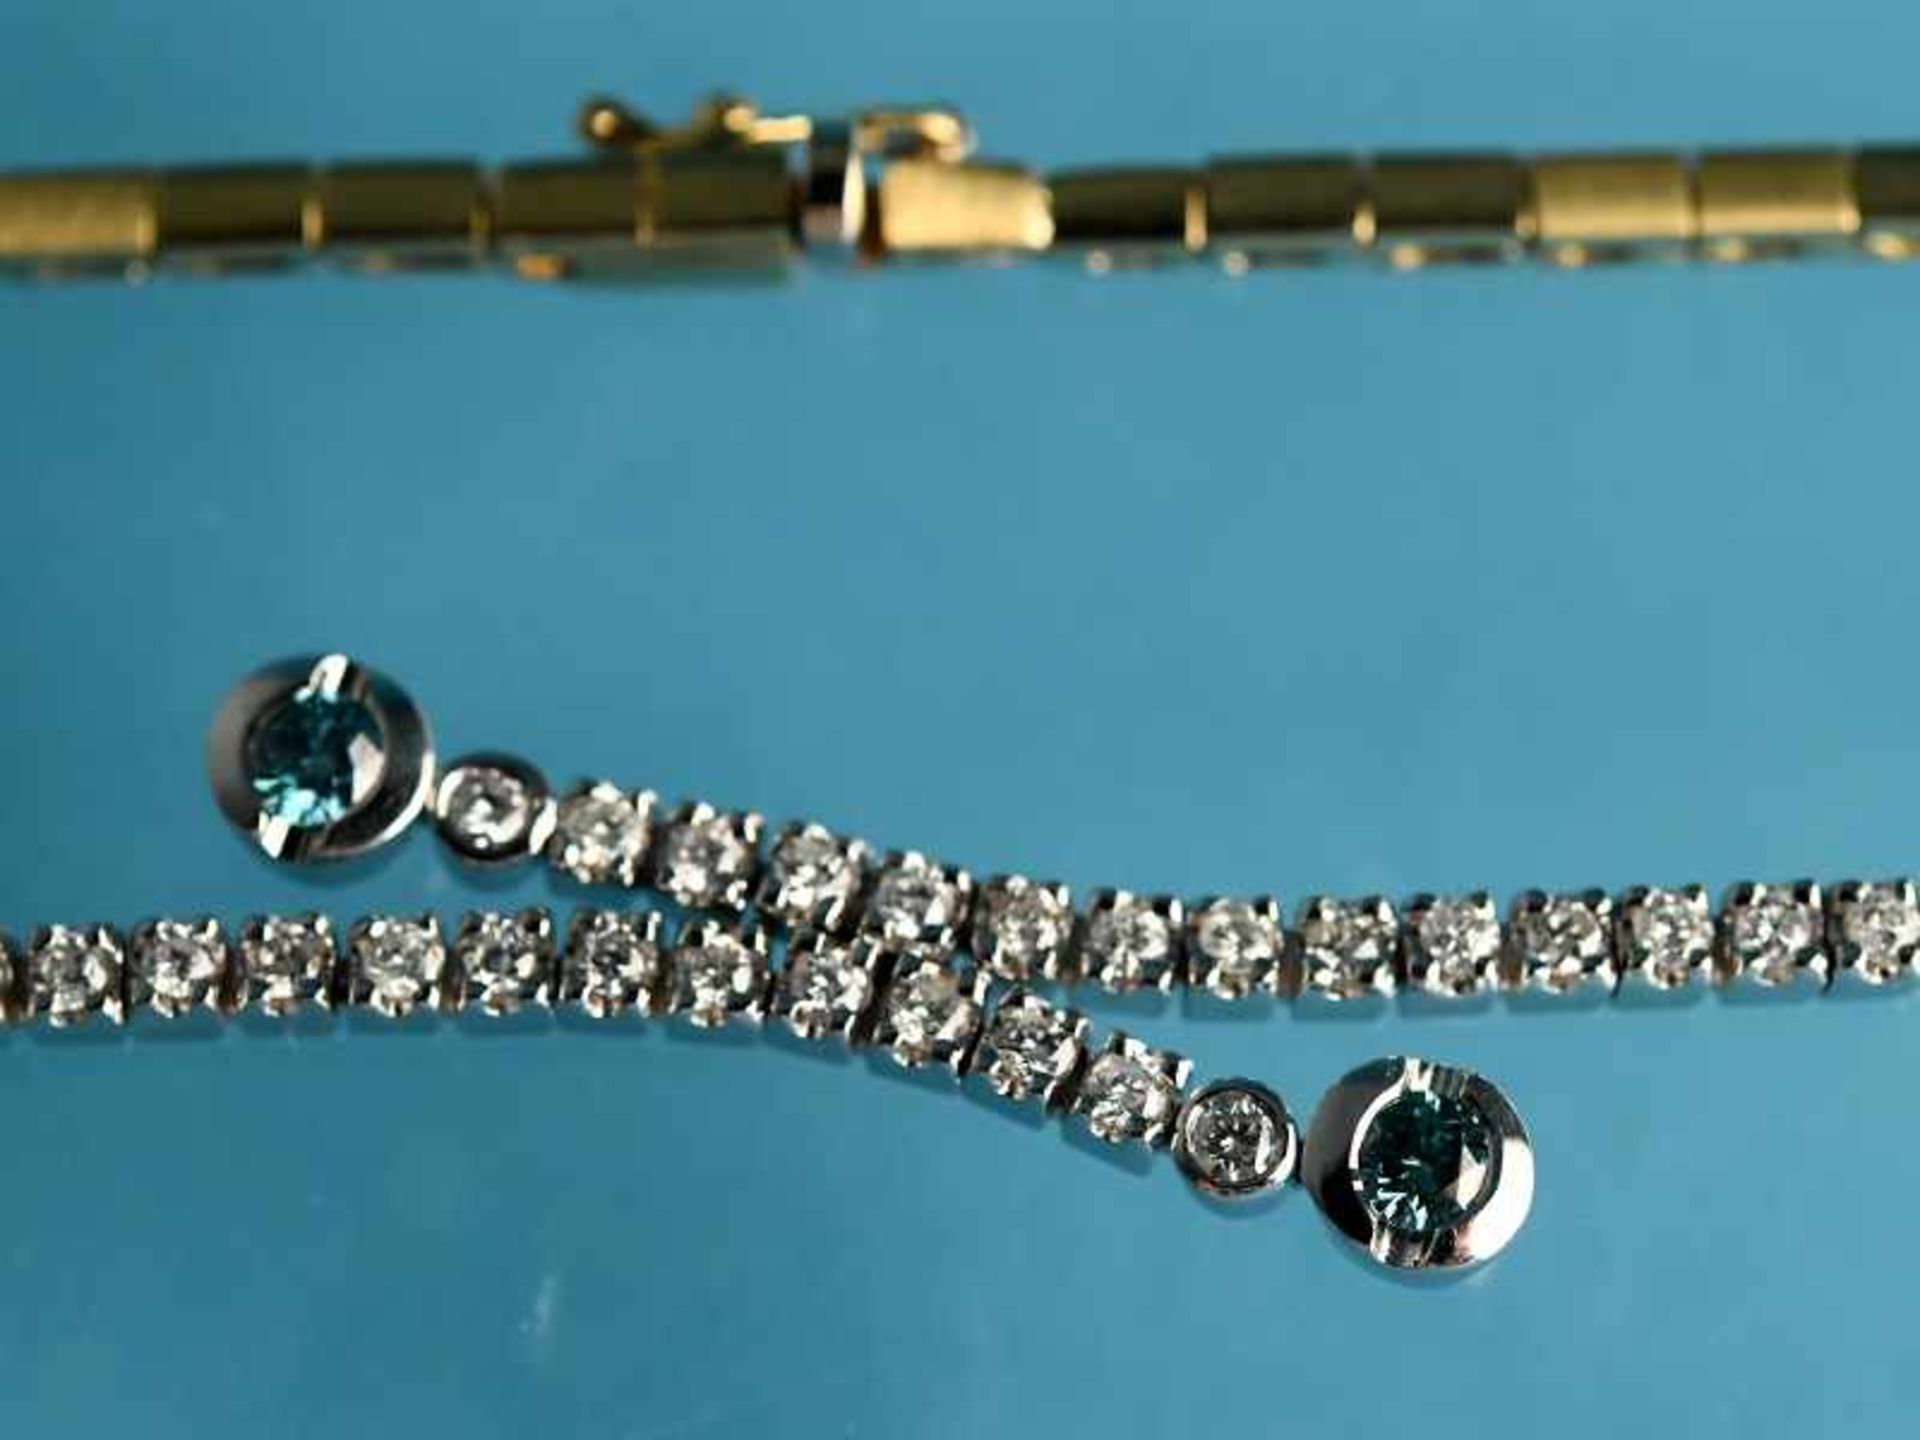 Collier und Armband mit 4 farbigen und farblosen Brillanten, zusammen ca. 4,09 ct, 90-er Jahre. - Image 9 of 9